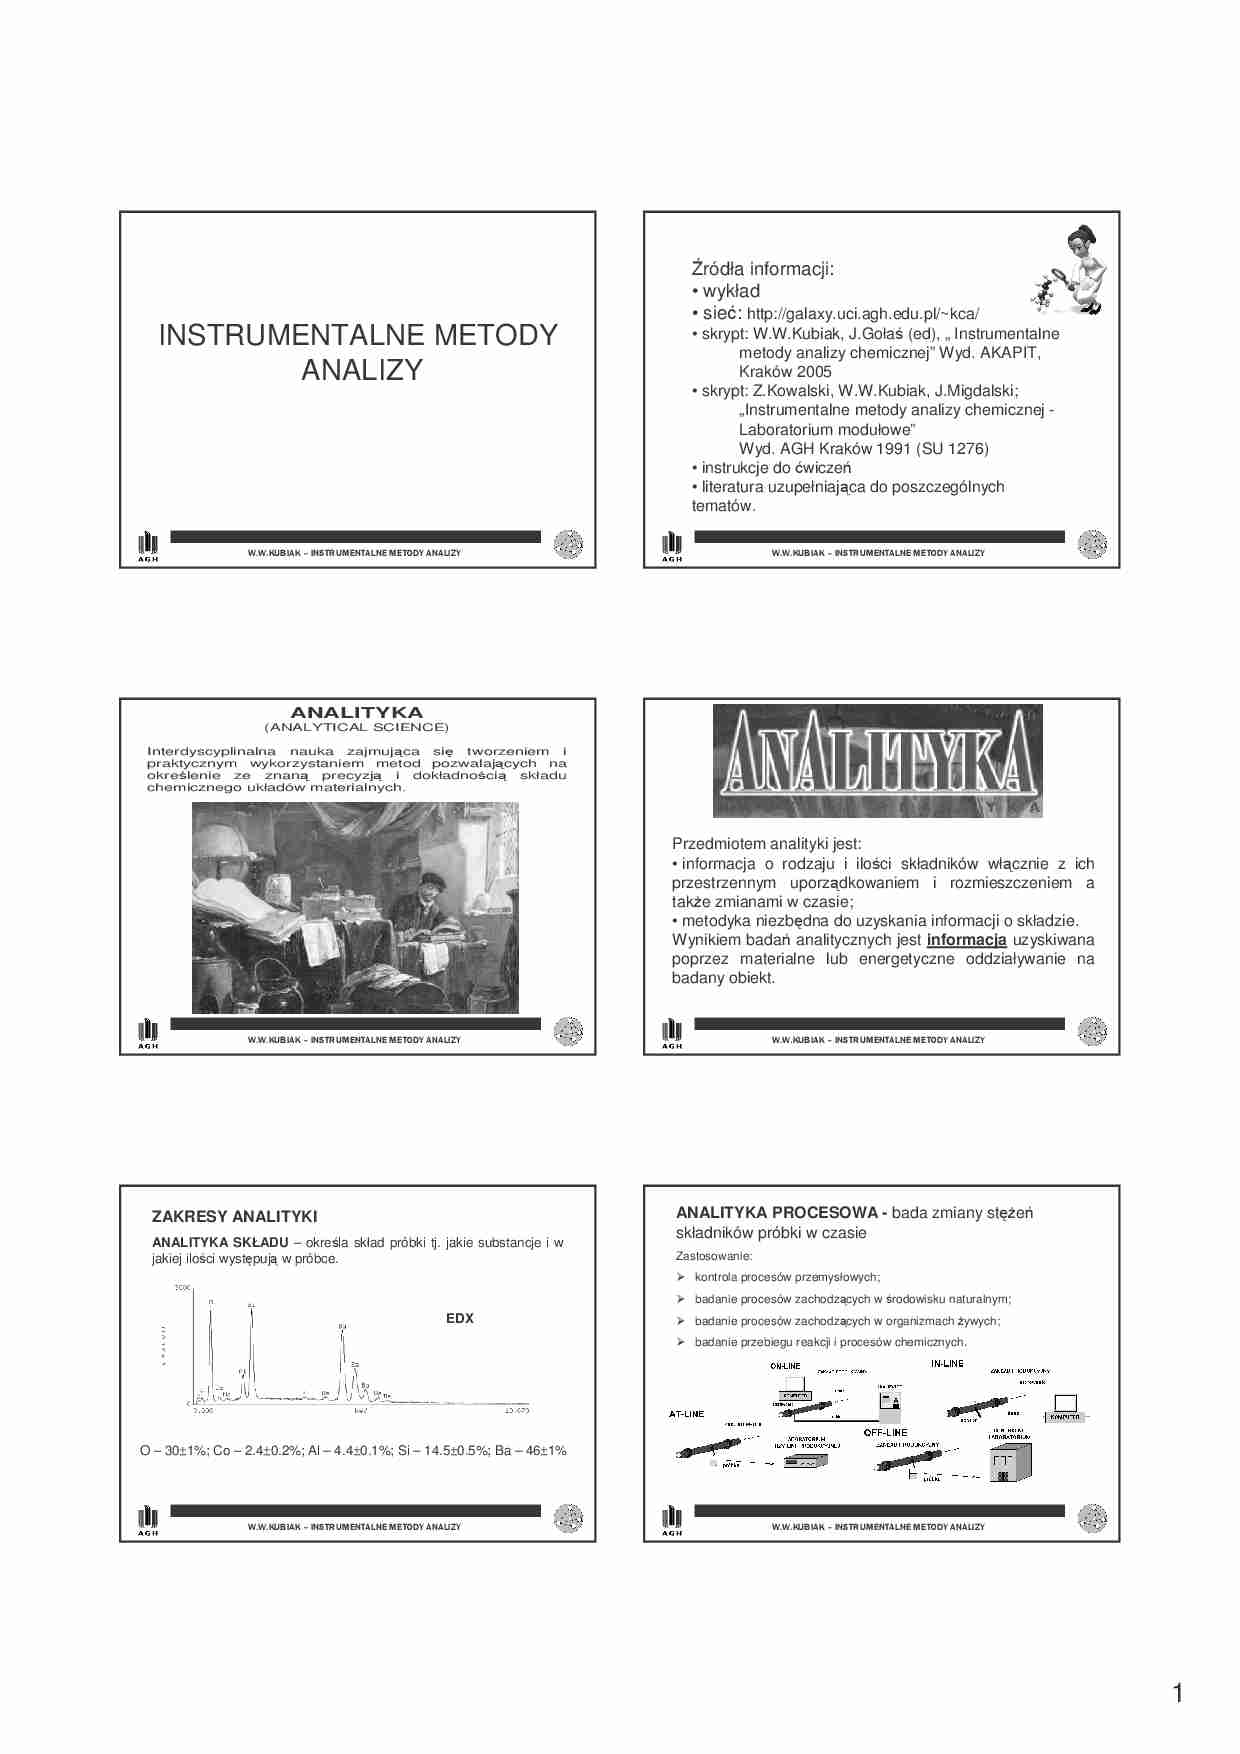 Instrumentalne metody analizy - omówienie - Analityka strukturalna - strona 1